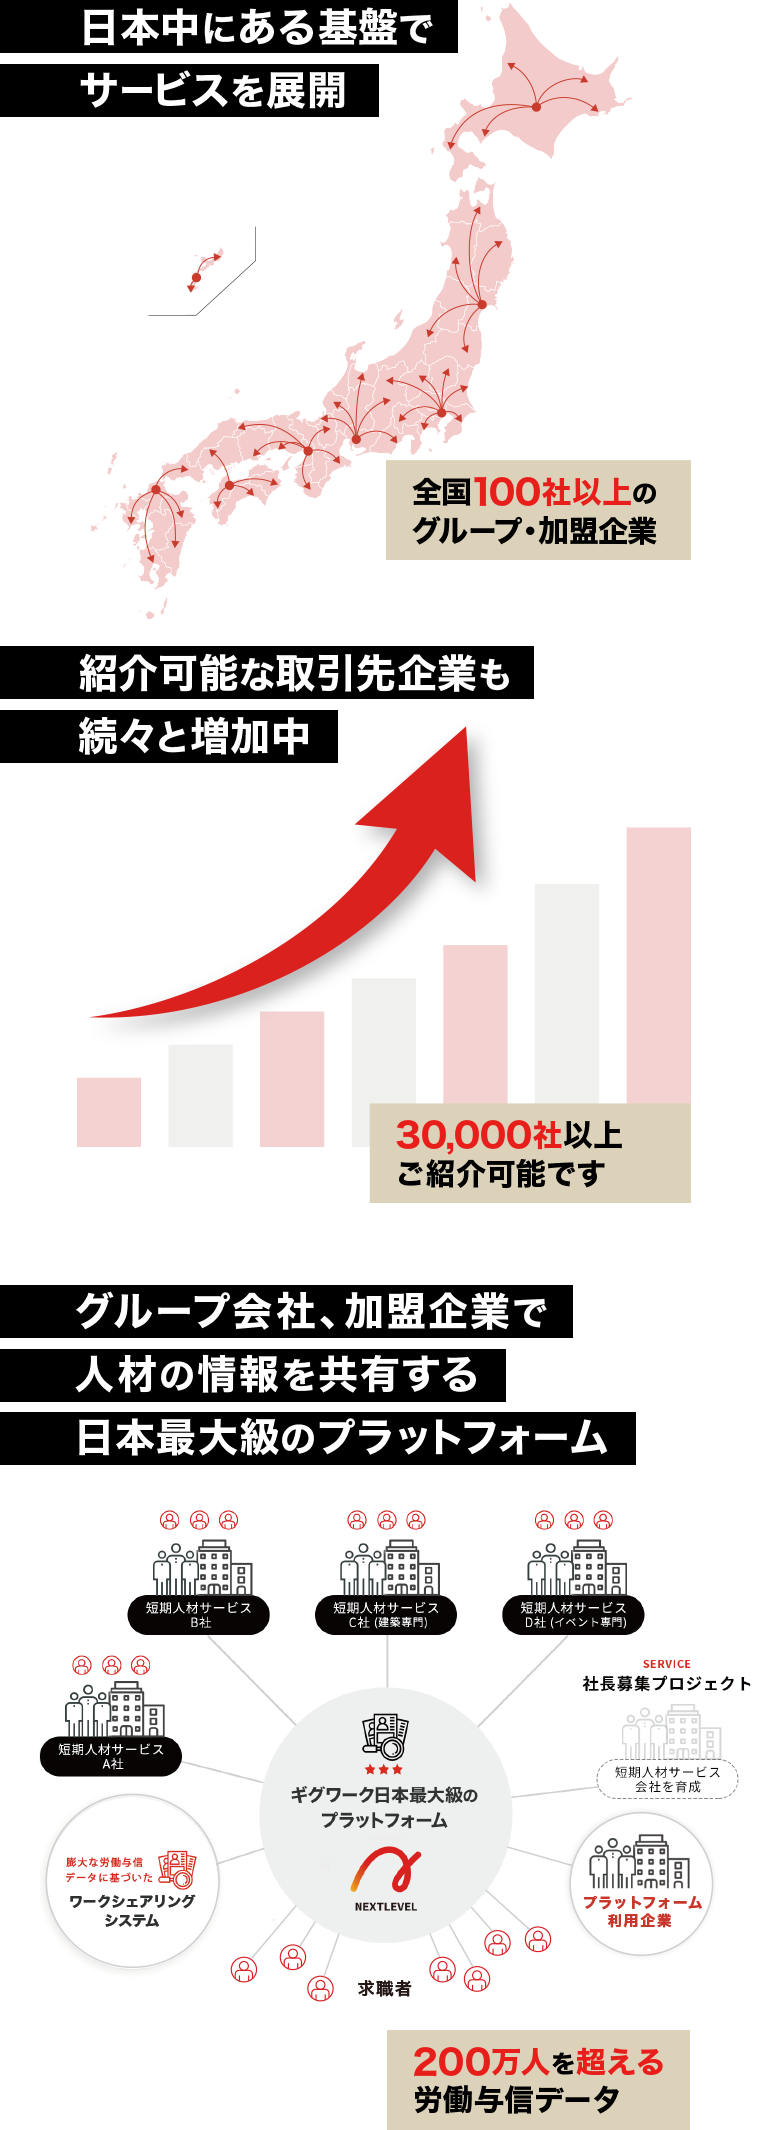 日本中にある基盤でサービスを展開、紹介可能な取引先企業も続々と増加中、グループ会社、加盟企業で 人材の情報を共有する日本最大級のプラットフォーム